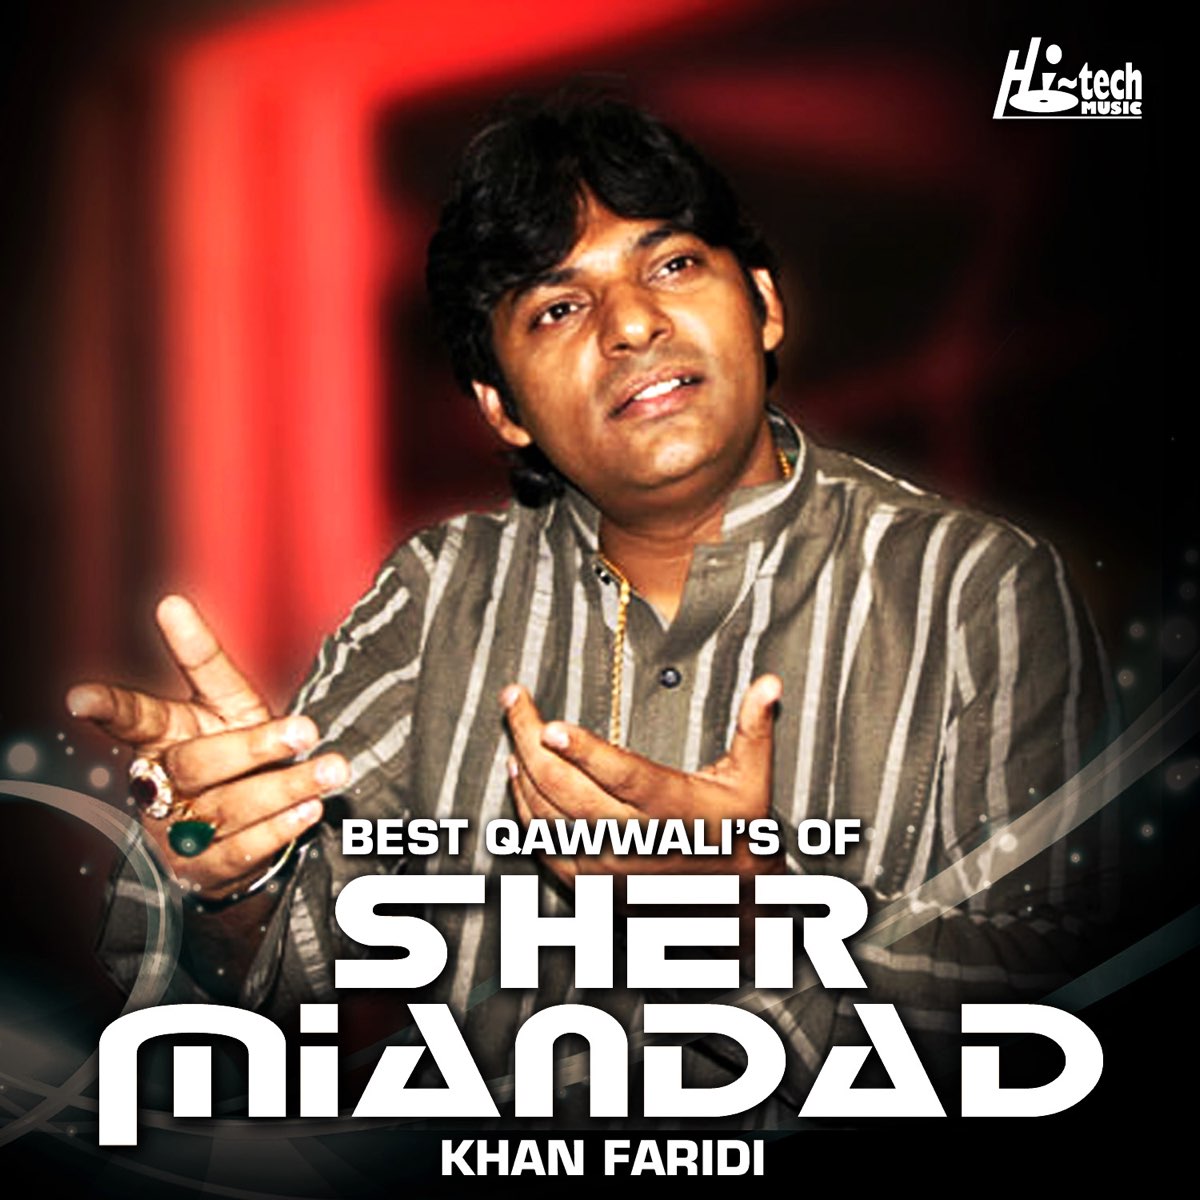 Best Qawwali's of Sher Miandad Khan Faridi - Album by Sher Miandad Khan  Faridi - Apple Music